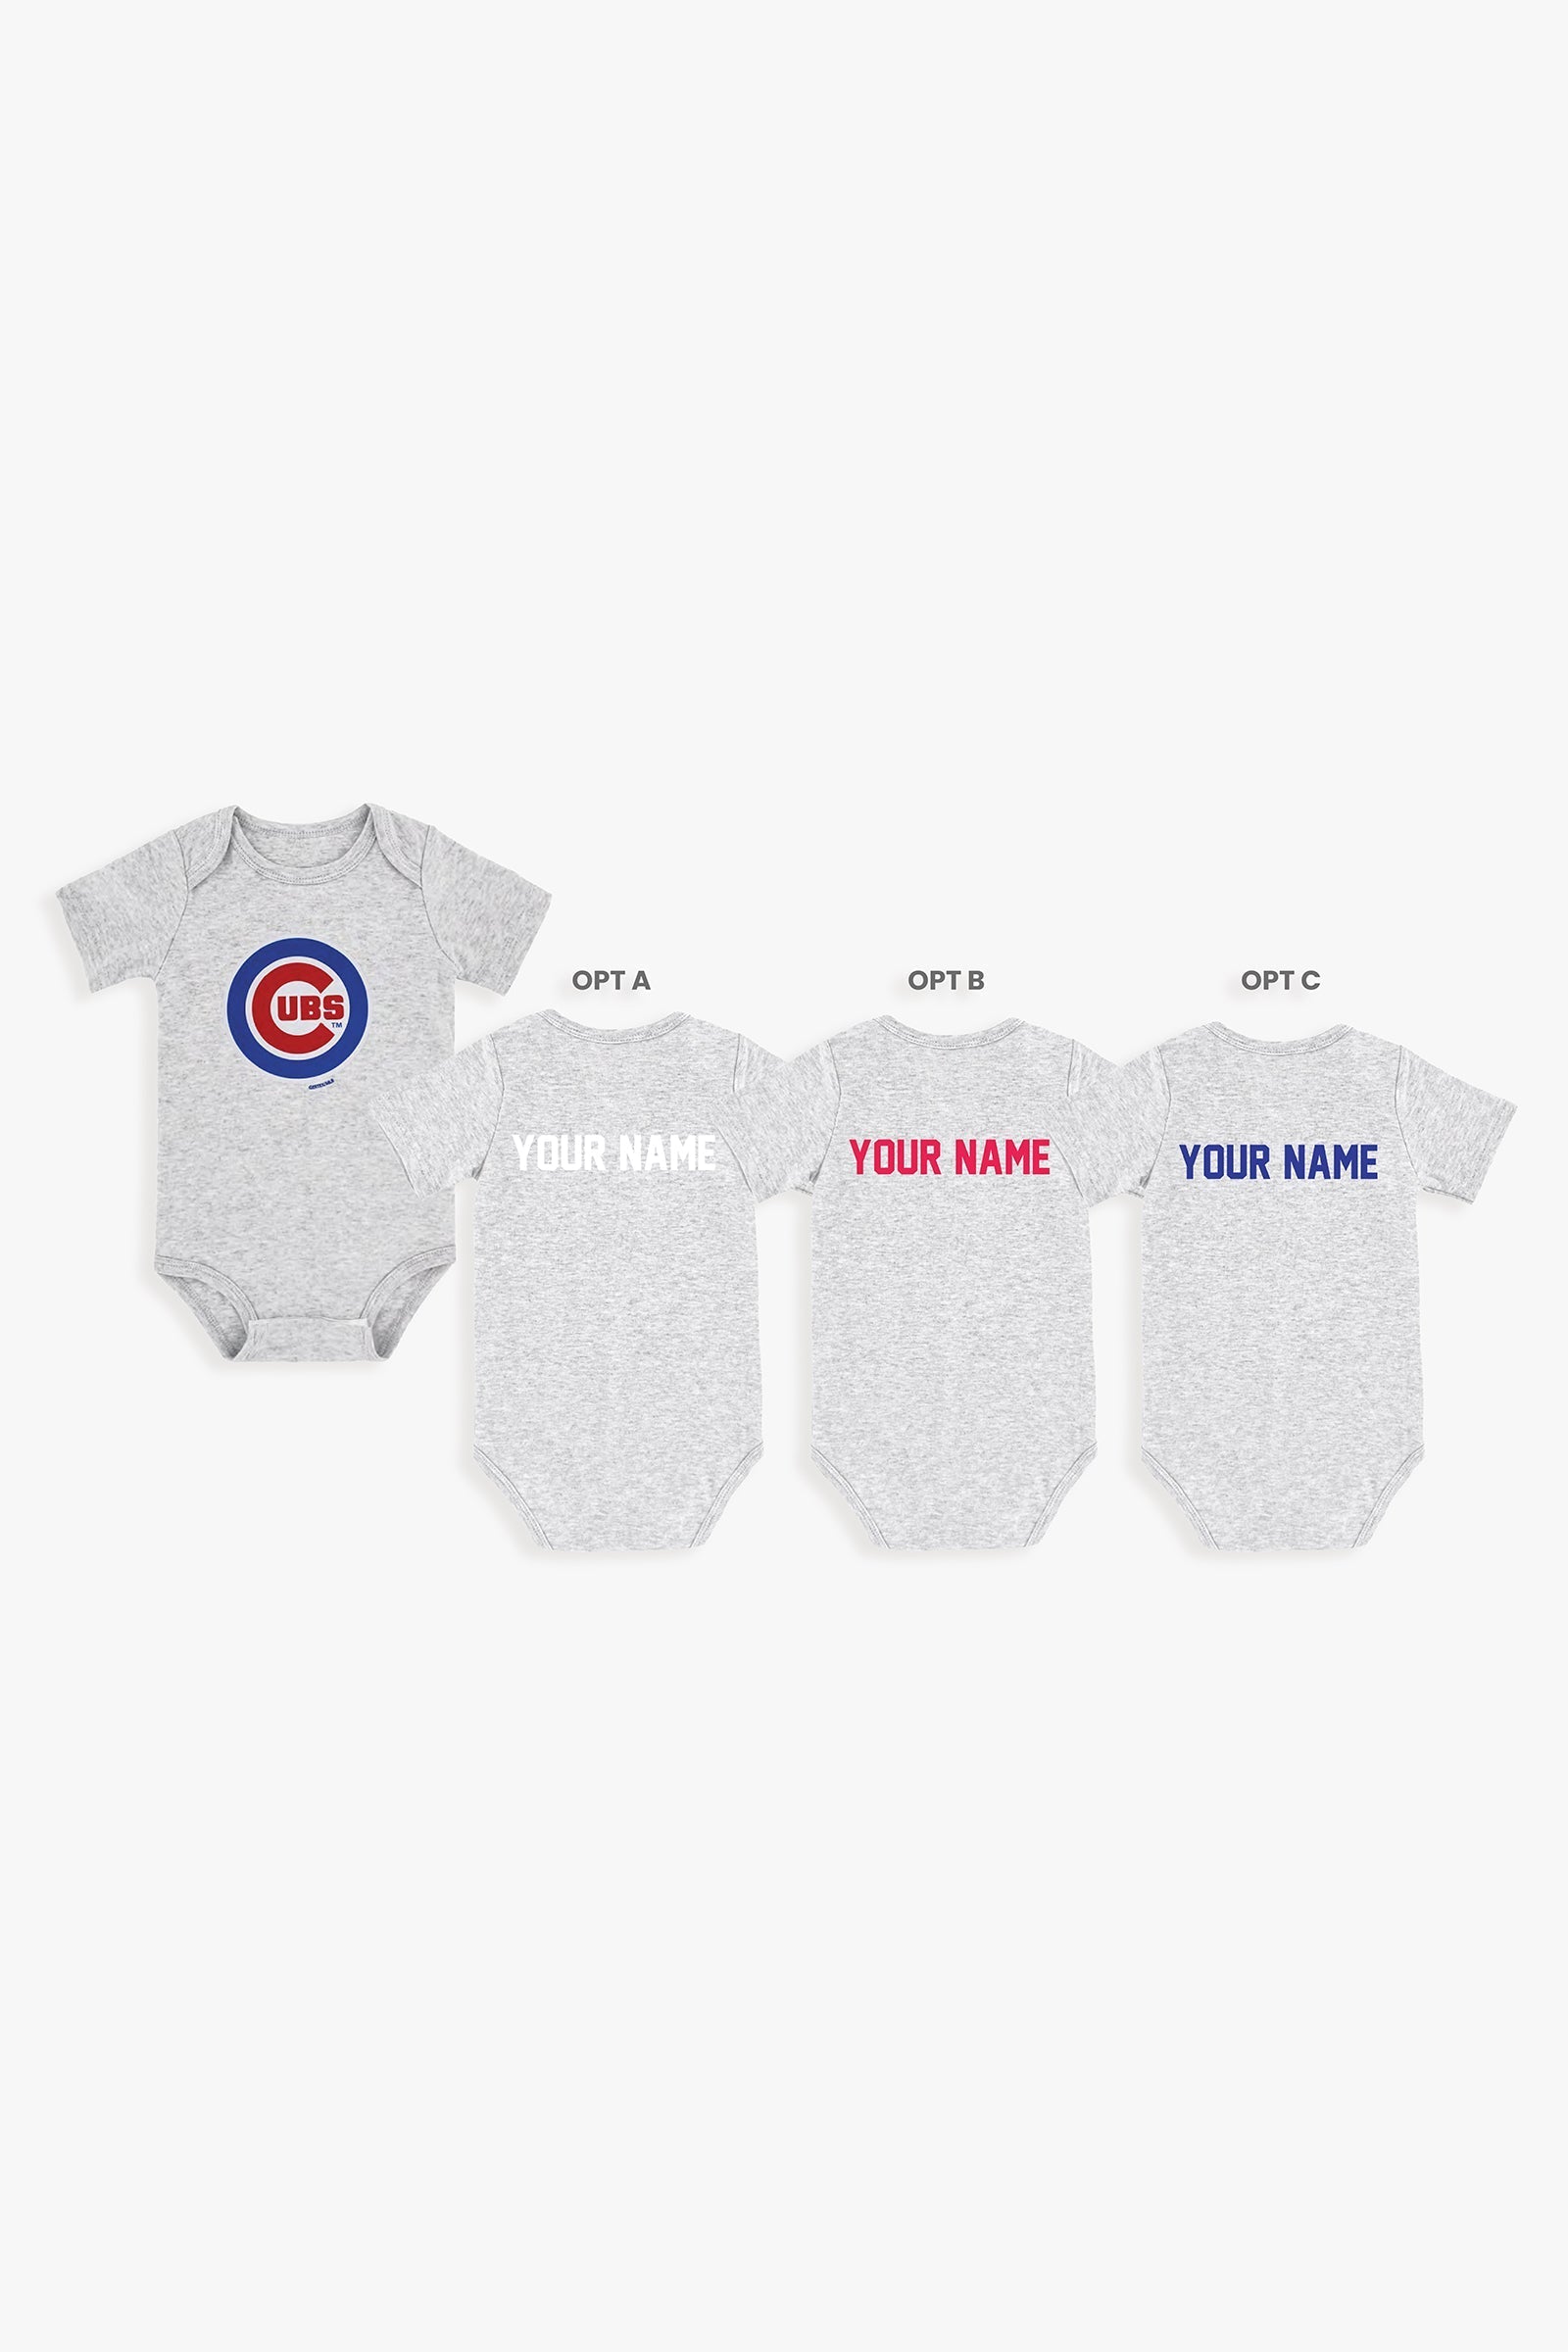 Gertex Customizable MLB Baby Onesie Bodysuit in Grey (12-18 Months)